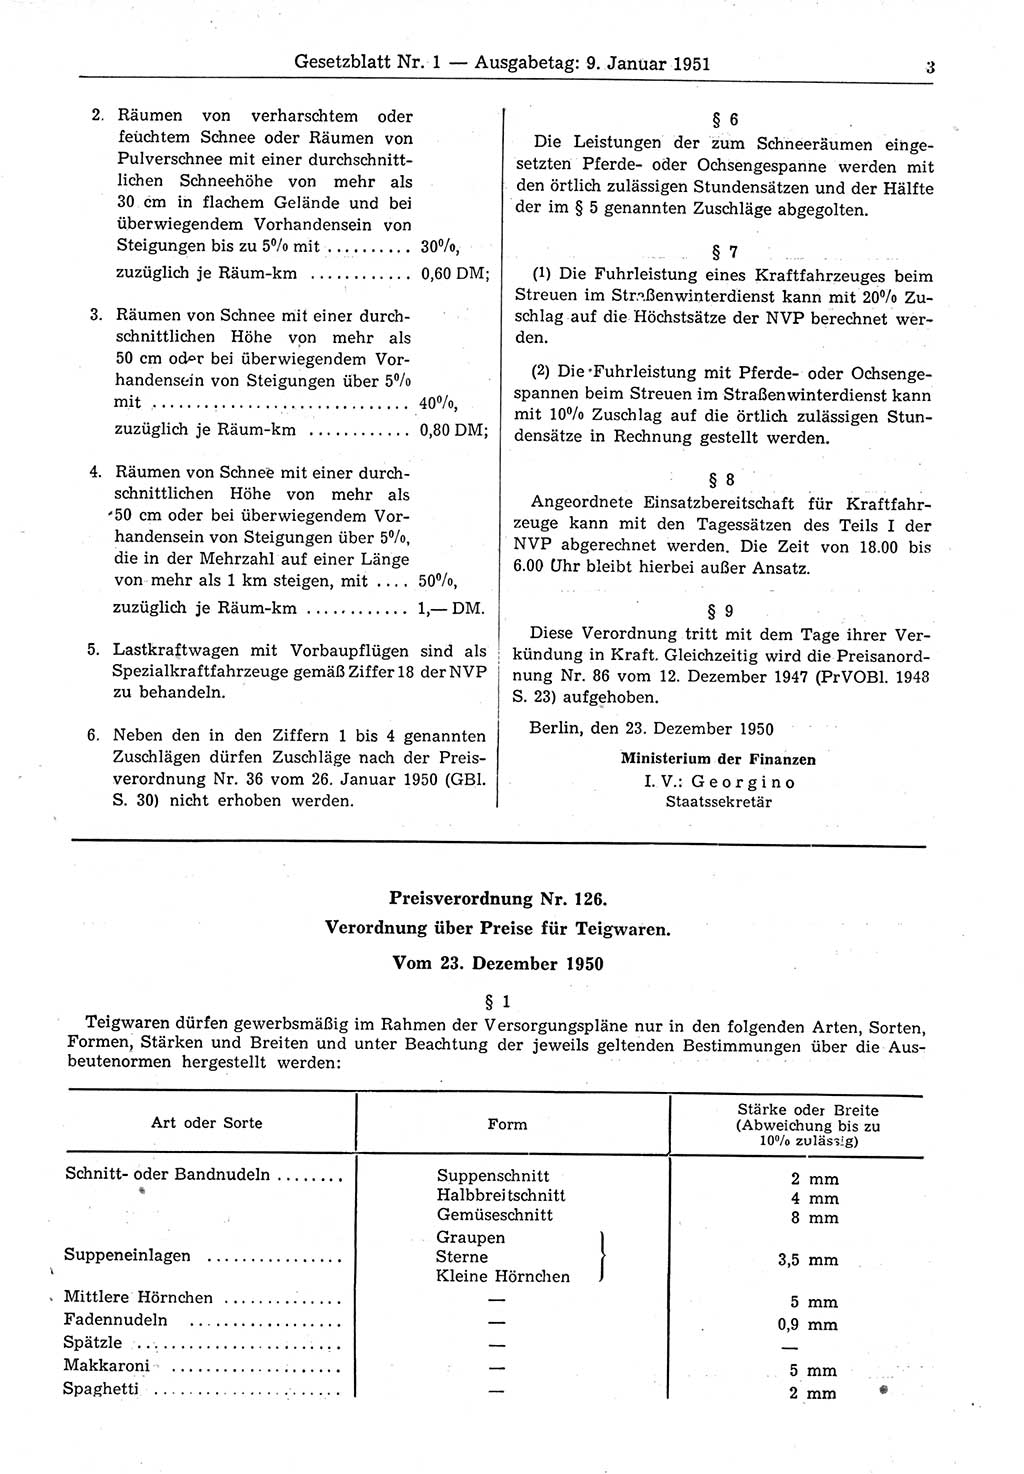 Gesetzblatt (GBl.) der Deutschen Demokratischen Republik (DDR) 1951, Seite 3 (GBl. DDR 1951, S. 3)